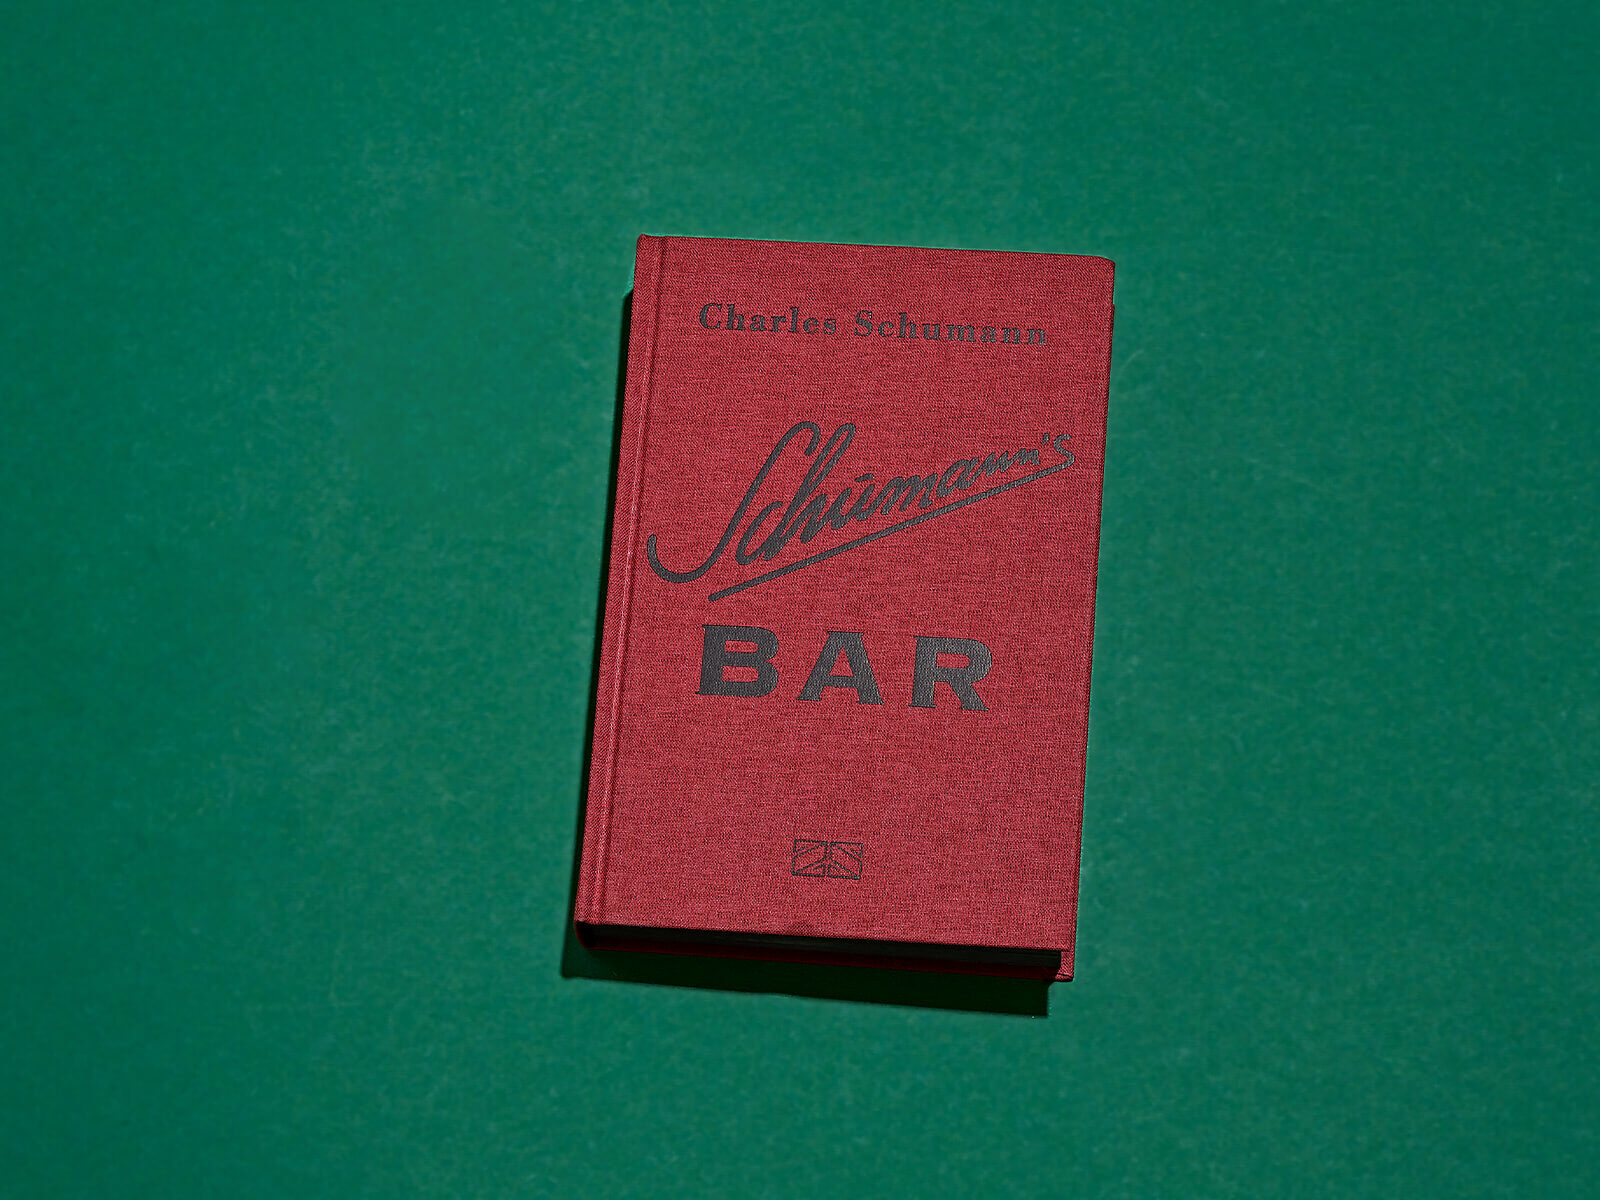 Schumann's Bar - klassische Cocktail Rezepte in einem Buch von Charles Schumann